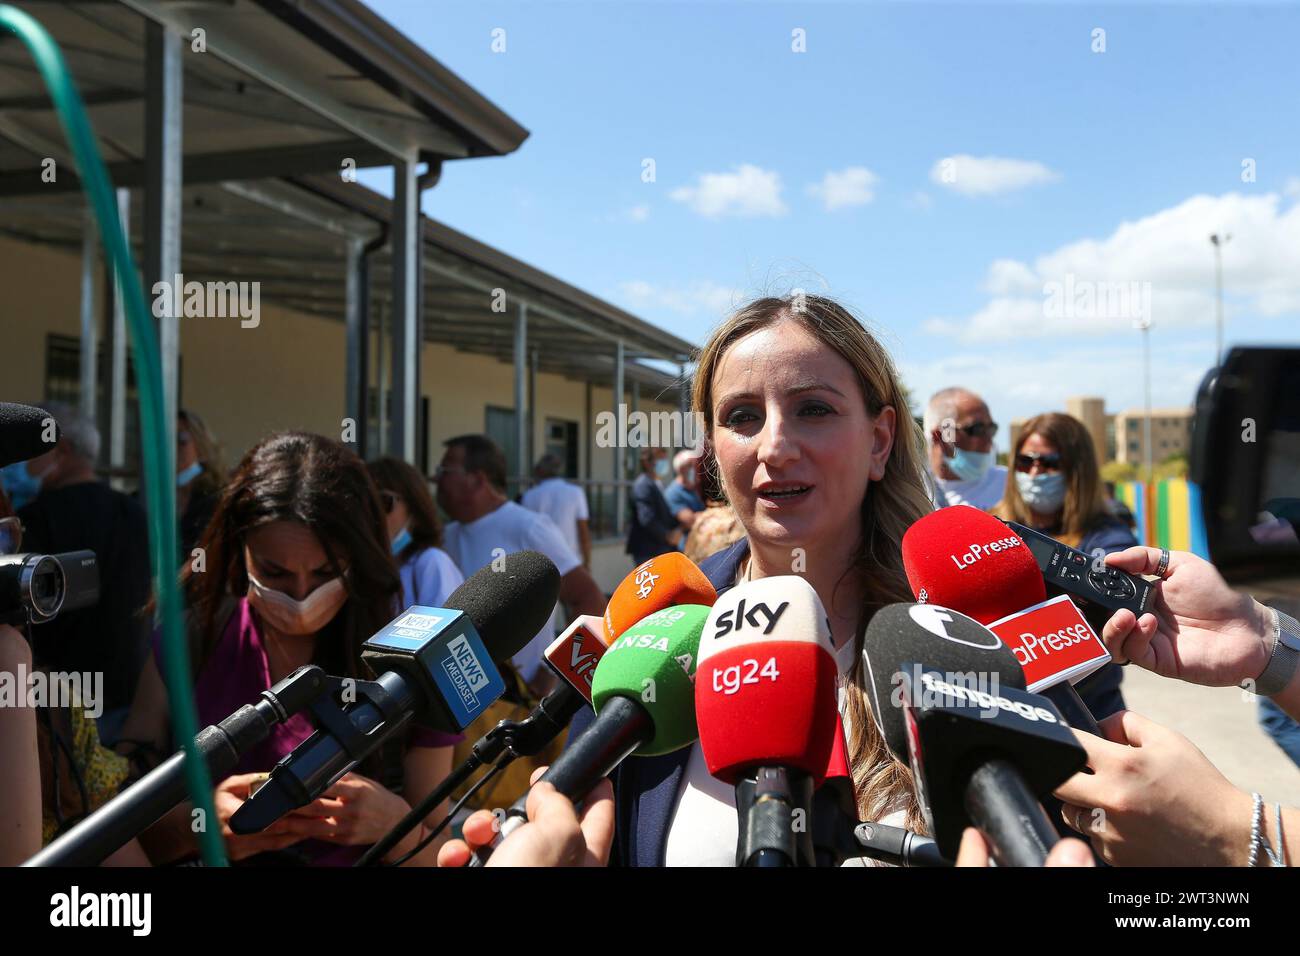 Emanuela Belcuore, la garante des prisonniers de Caserta, parle avec des journalistes devant la prison de Santa Maria Capua Vetere, 'Francesco Banque D'Images